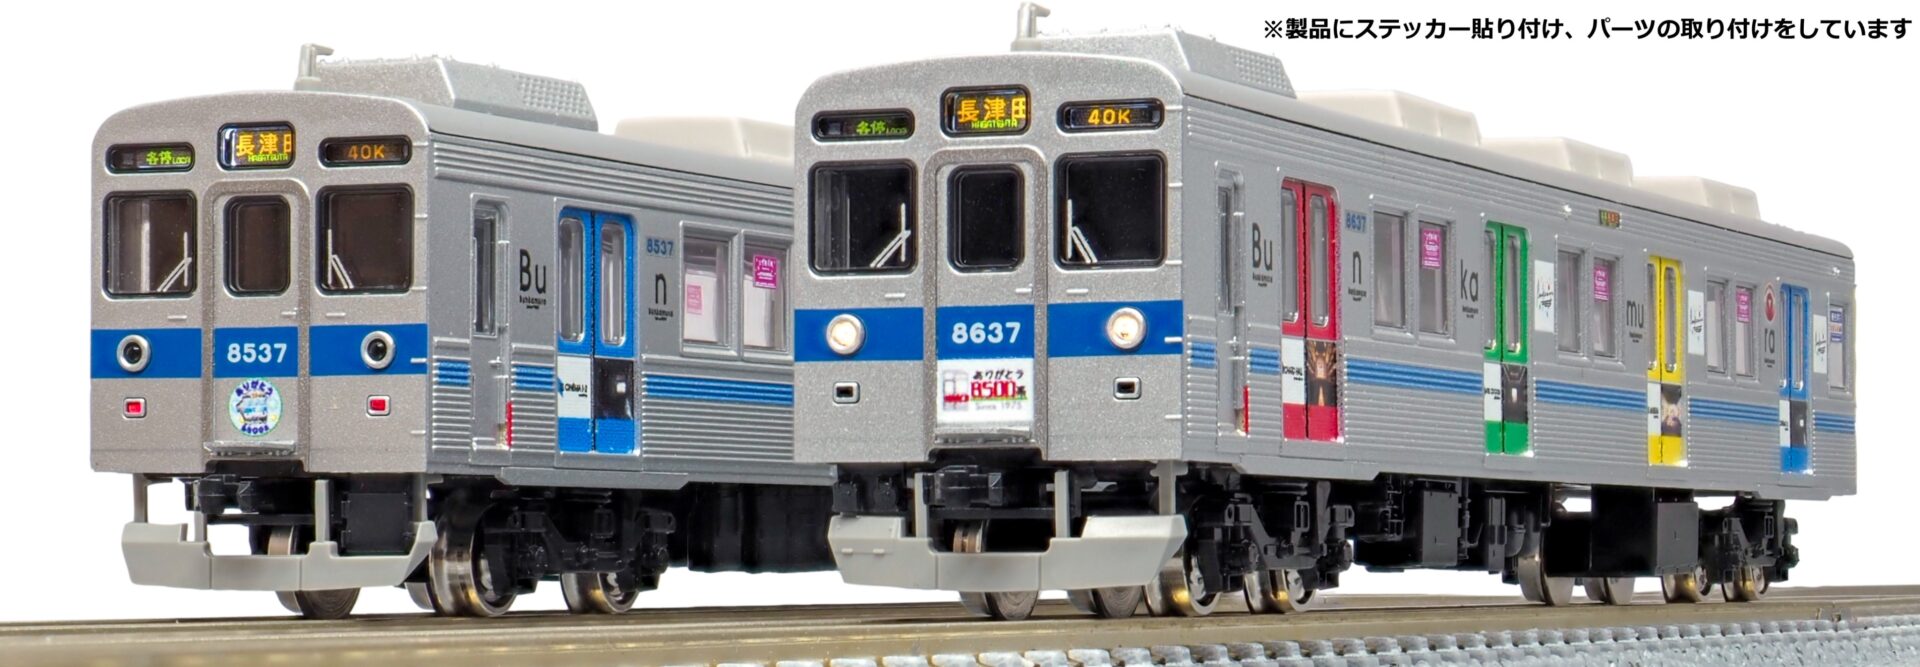 グリーンマックス Nゲージ 東急電鉄8500系 (ありがとう8637編成)10両編成セット (動力付き) 50727 鉄道模型 電車